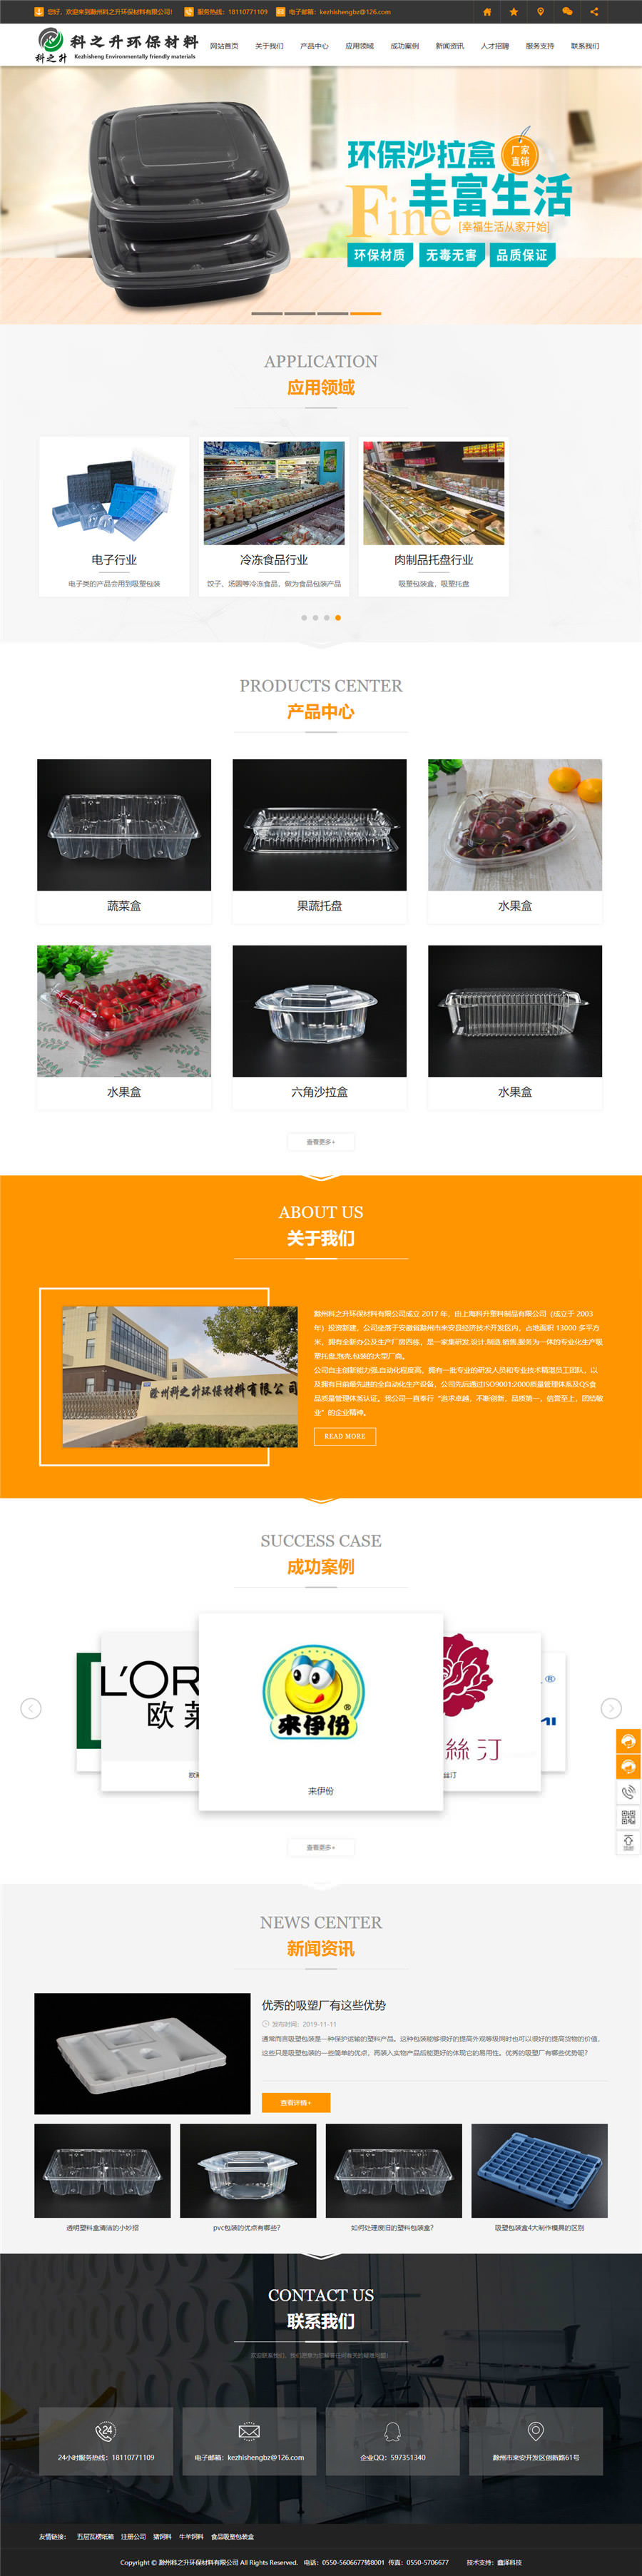 食品塑料包装盒-滁州科之升环保材料有限公司.jpg